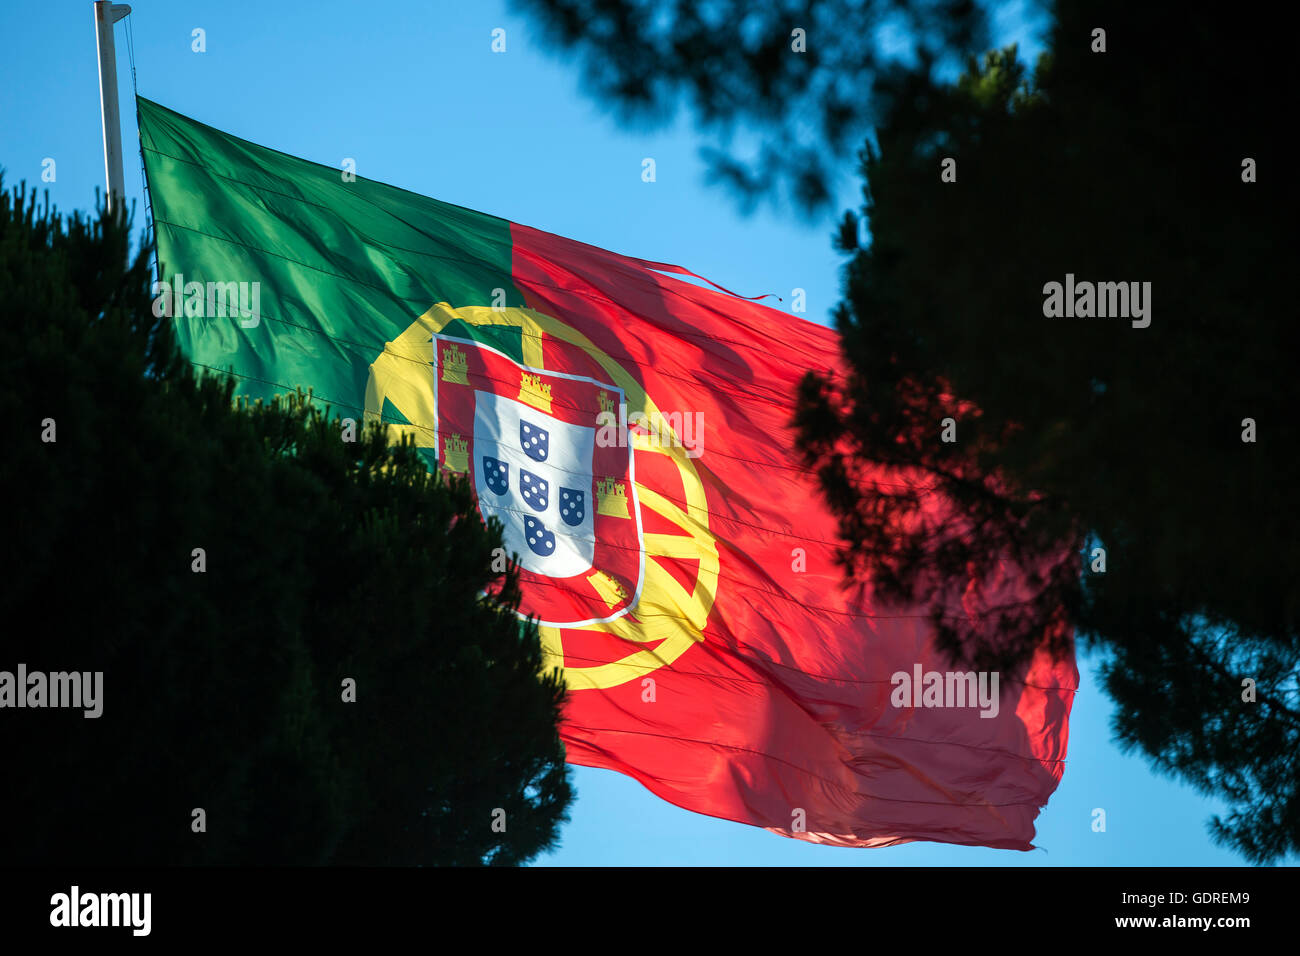 Waving Flag de la République du Portugal, Lisbonne, Lisbonne, Portugal, Europe District, les voyages, la photographie de Voyage, Voyage, Voyage Banque D'Images